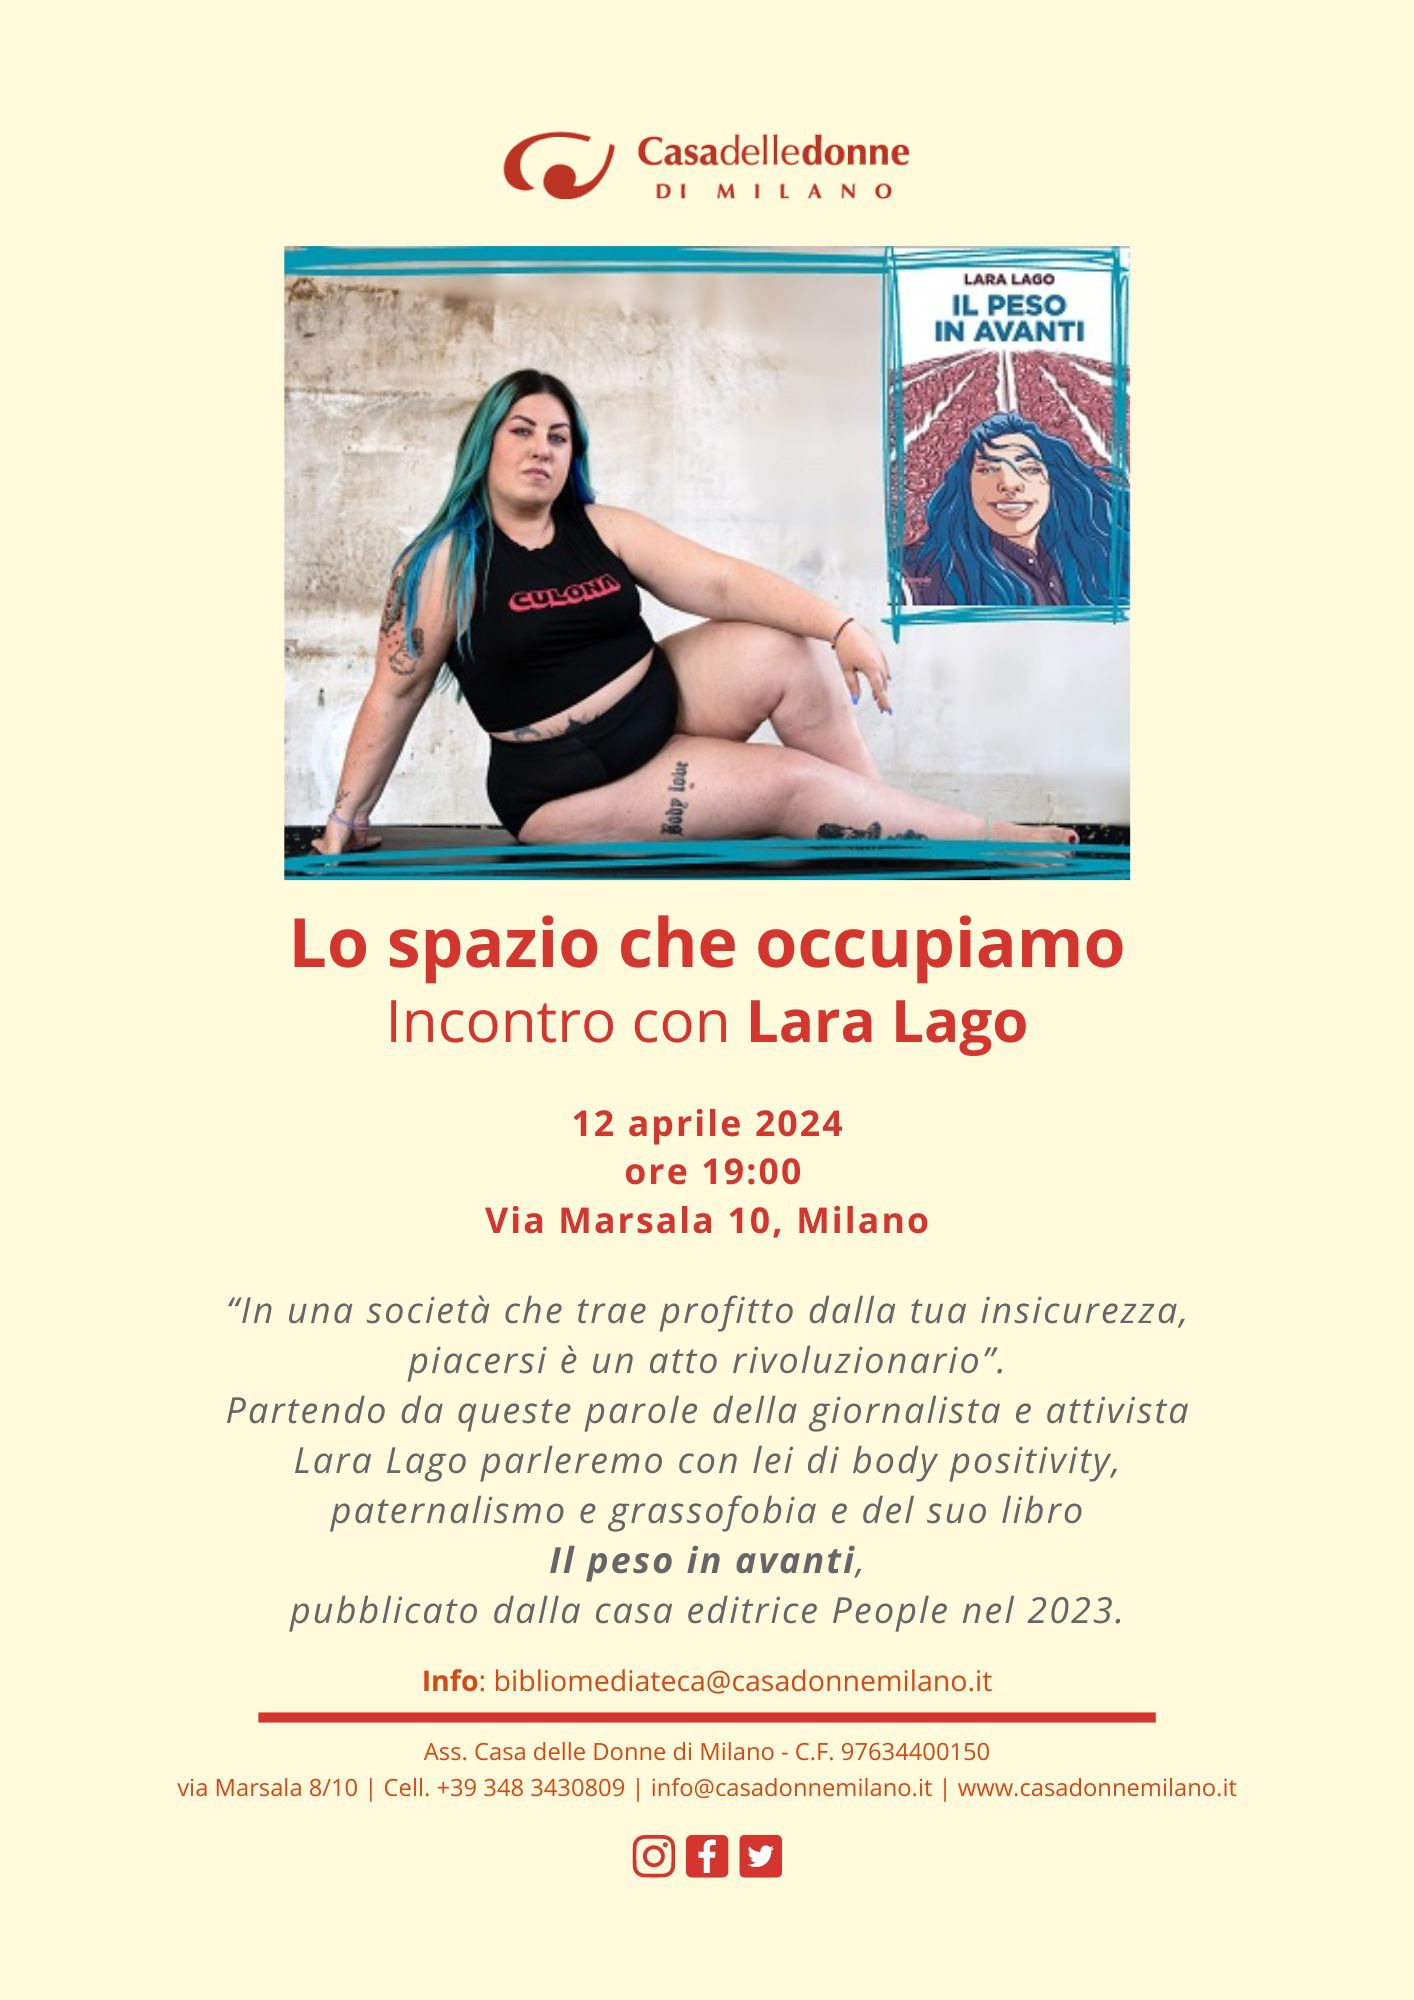 Presentazione del libro di Lara Lago: "Il peso in avanti" @ Casa delle Donne di Milano